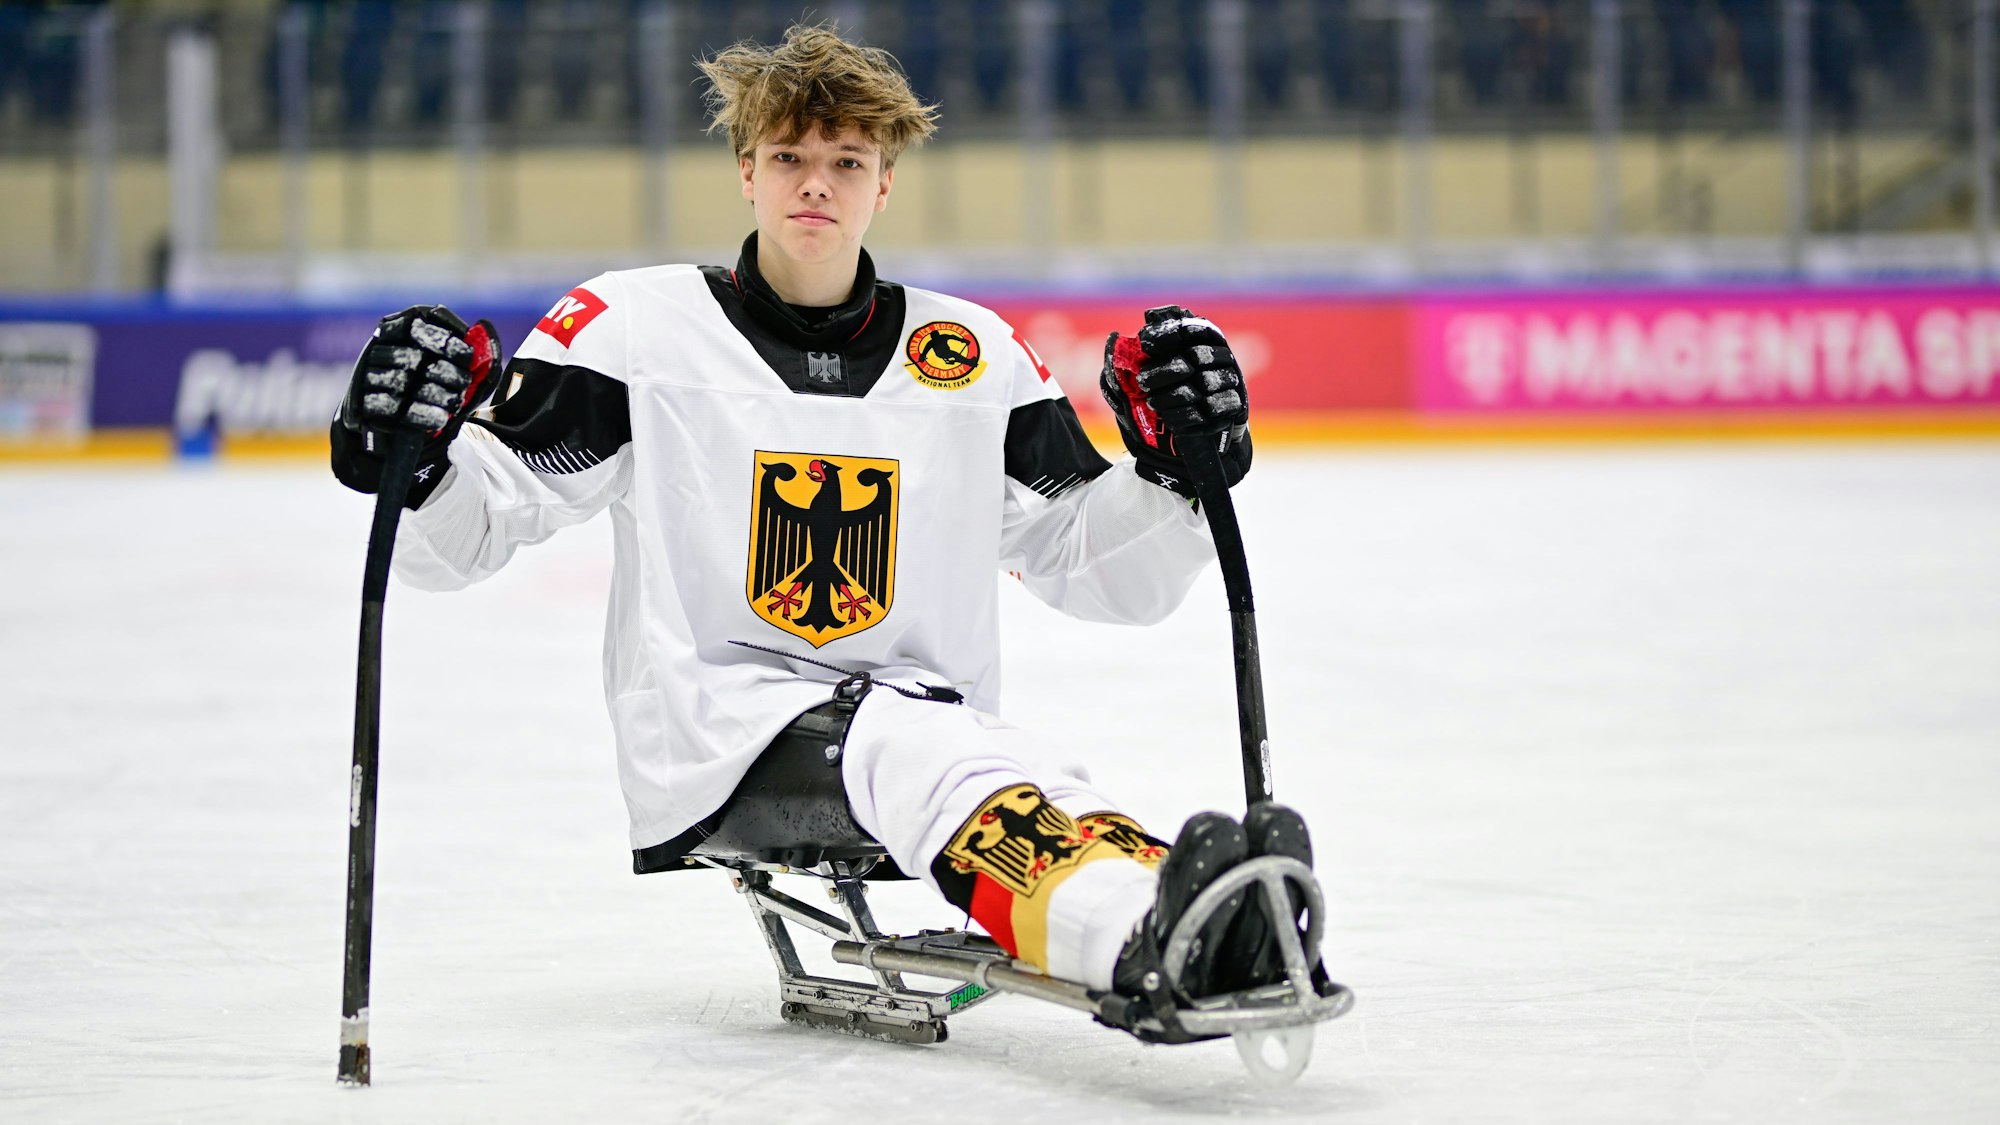 Para-Eishockey-Spieler Jano Bußmann im deutschen Nationaltrikot auf dem Eis.